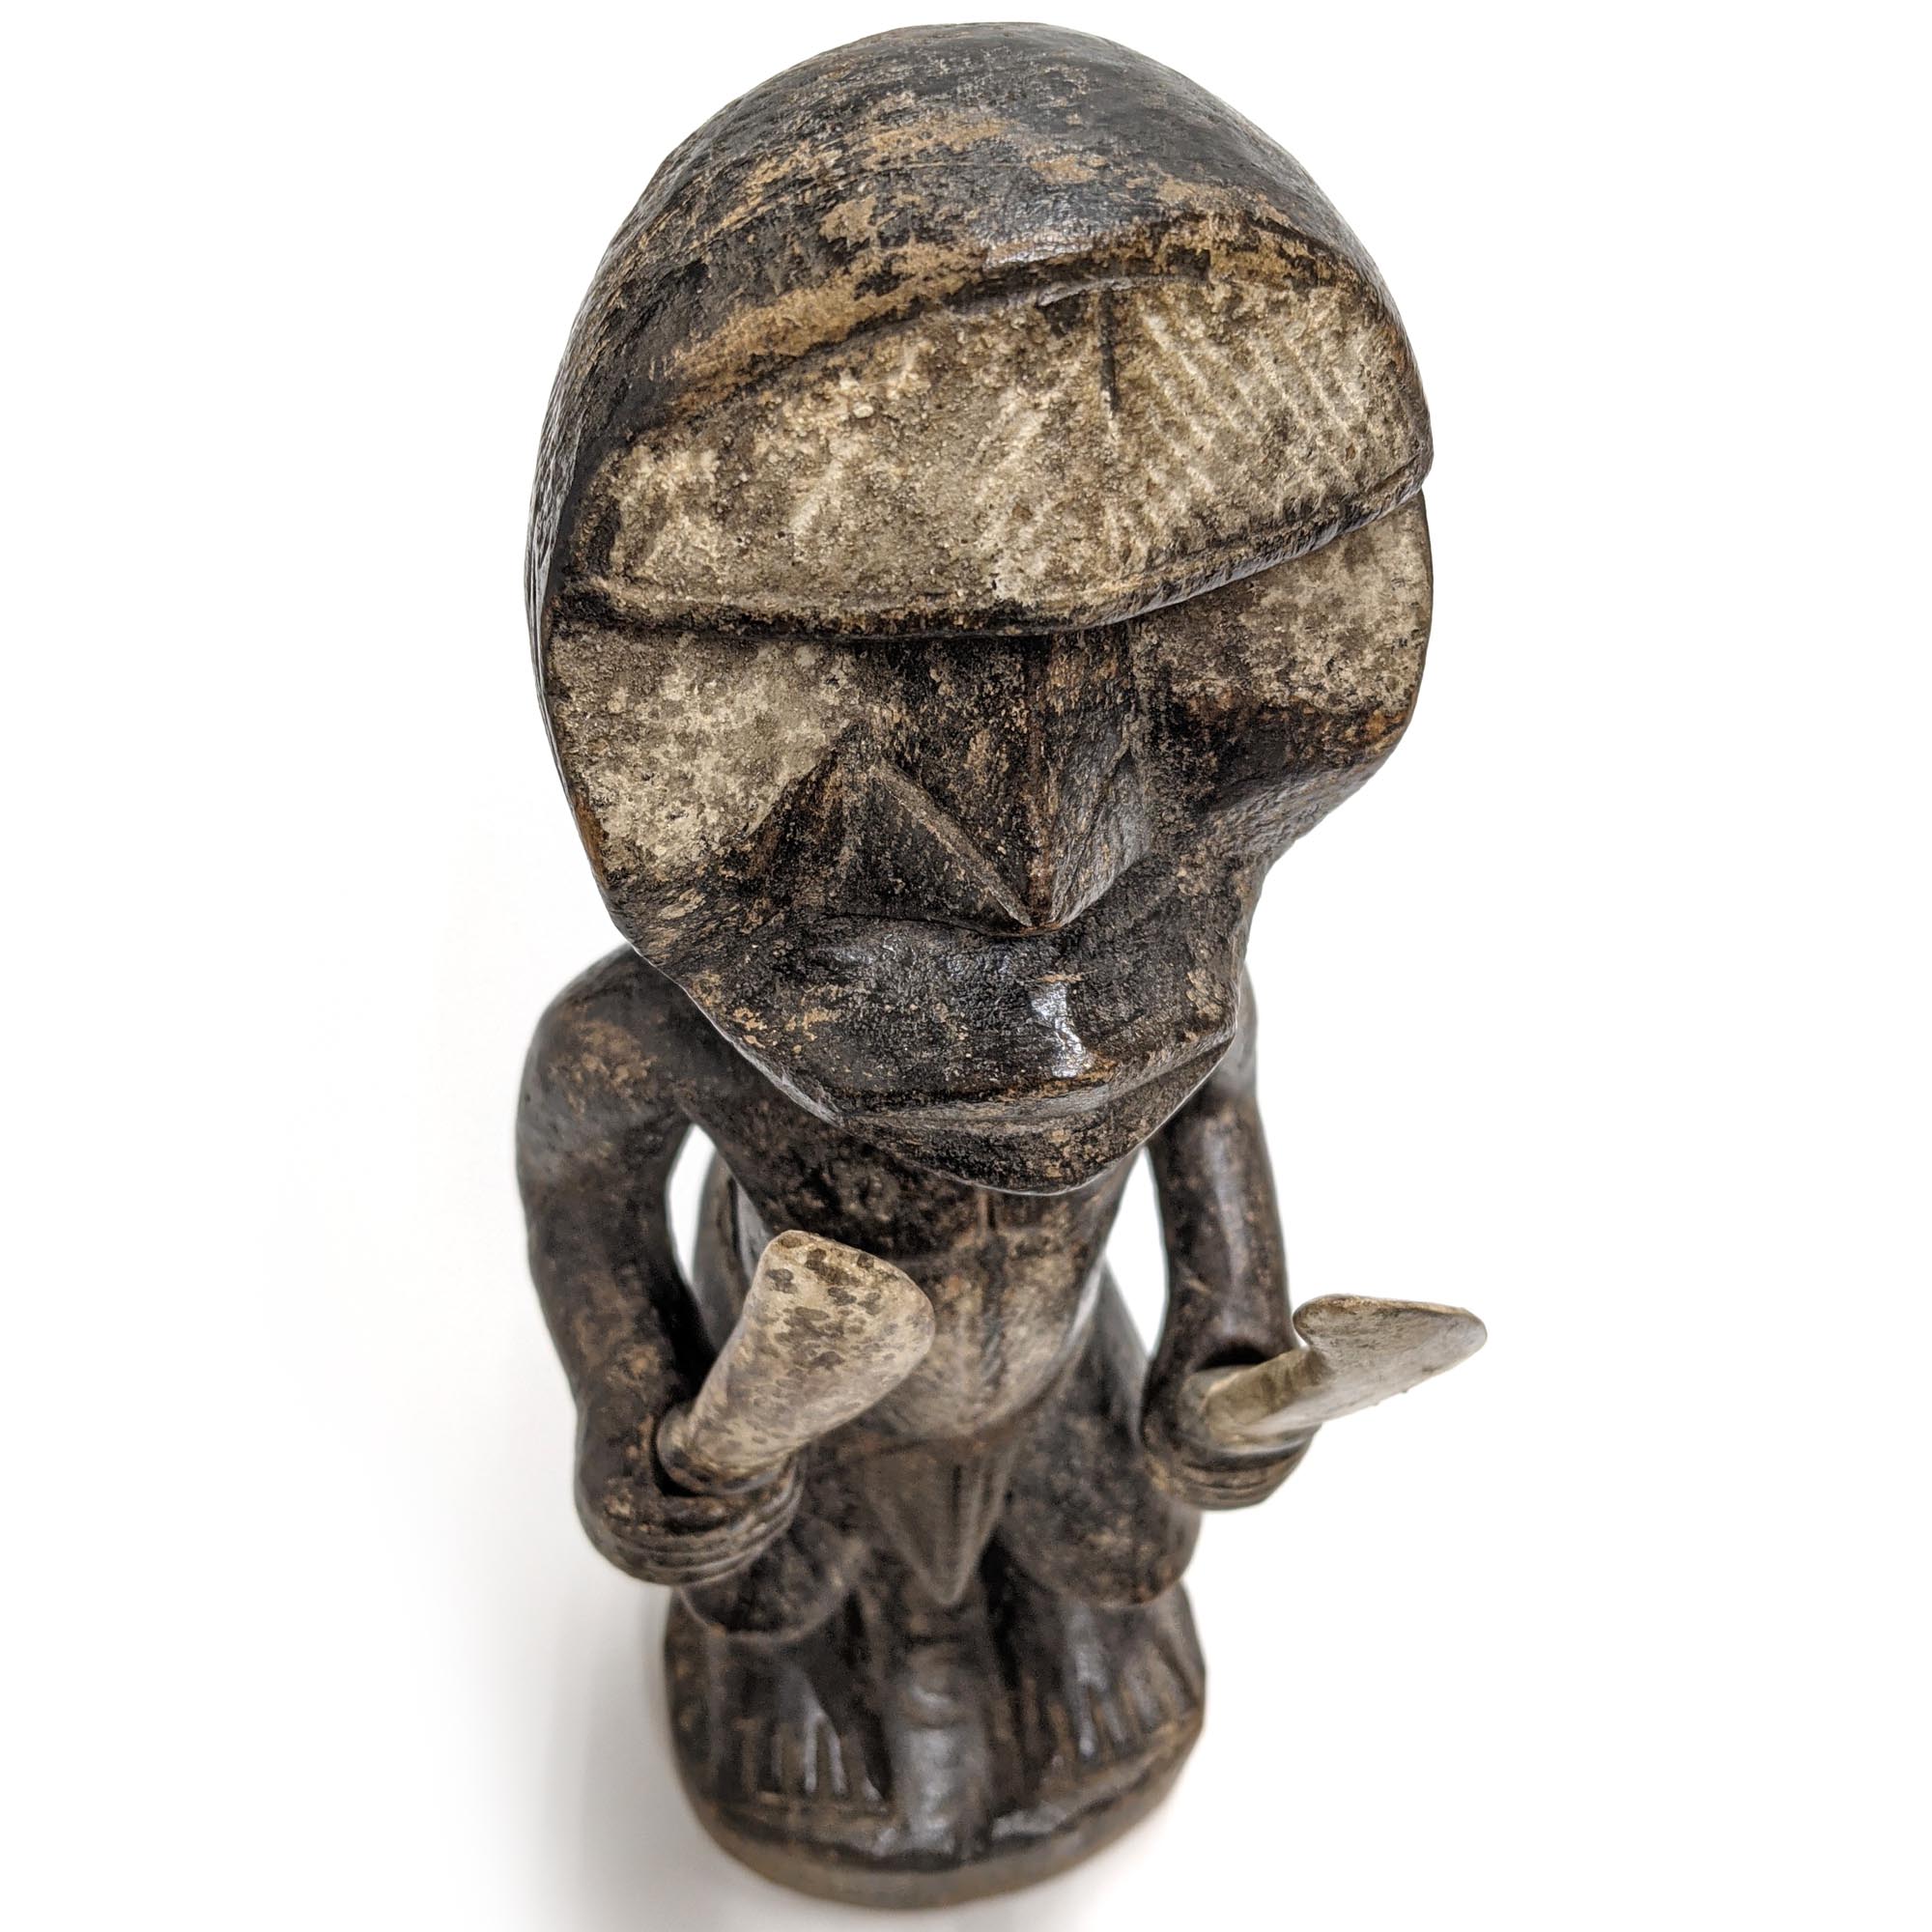 ウェ族戦士像 36cm アフリカ 人形 プリミティブアート 彫像 (c162-22